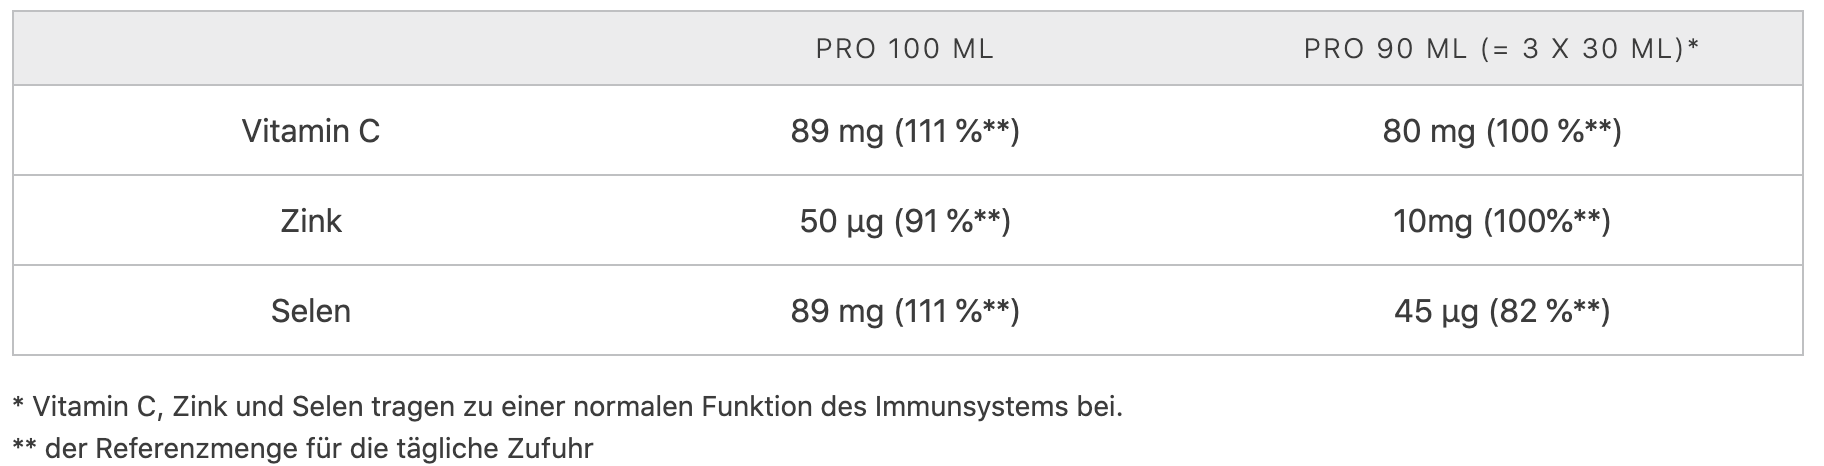 Nährwerttabelle LR Immune Plus